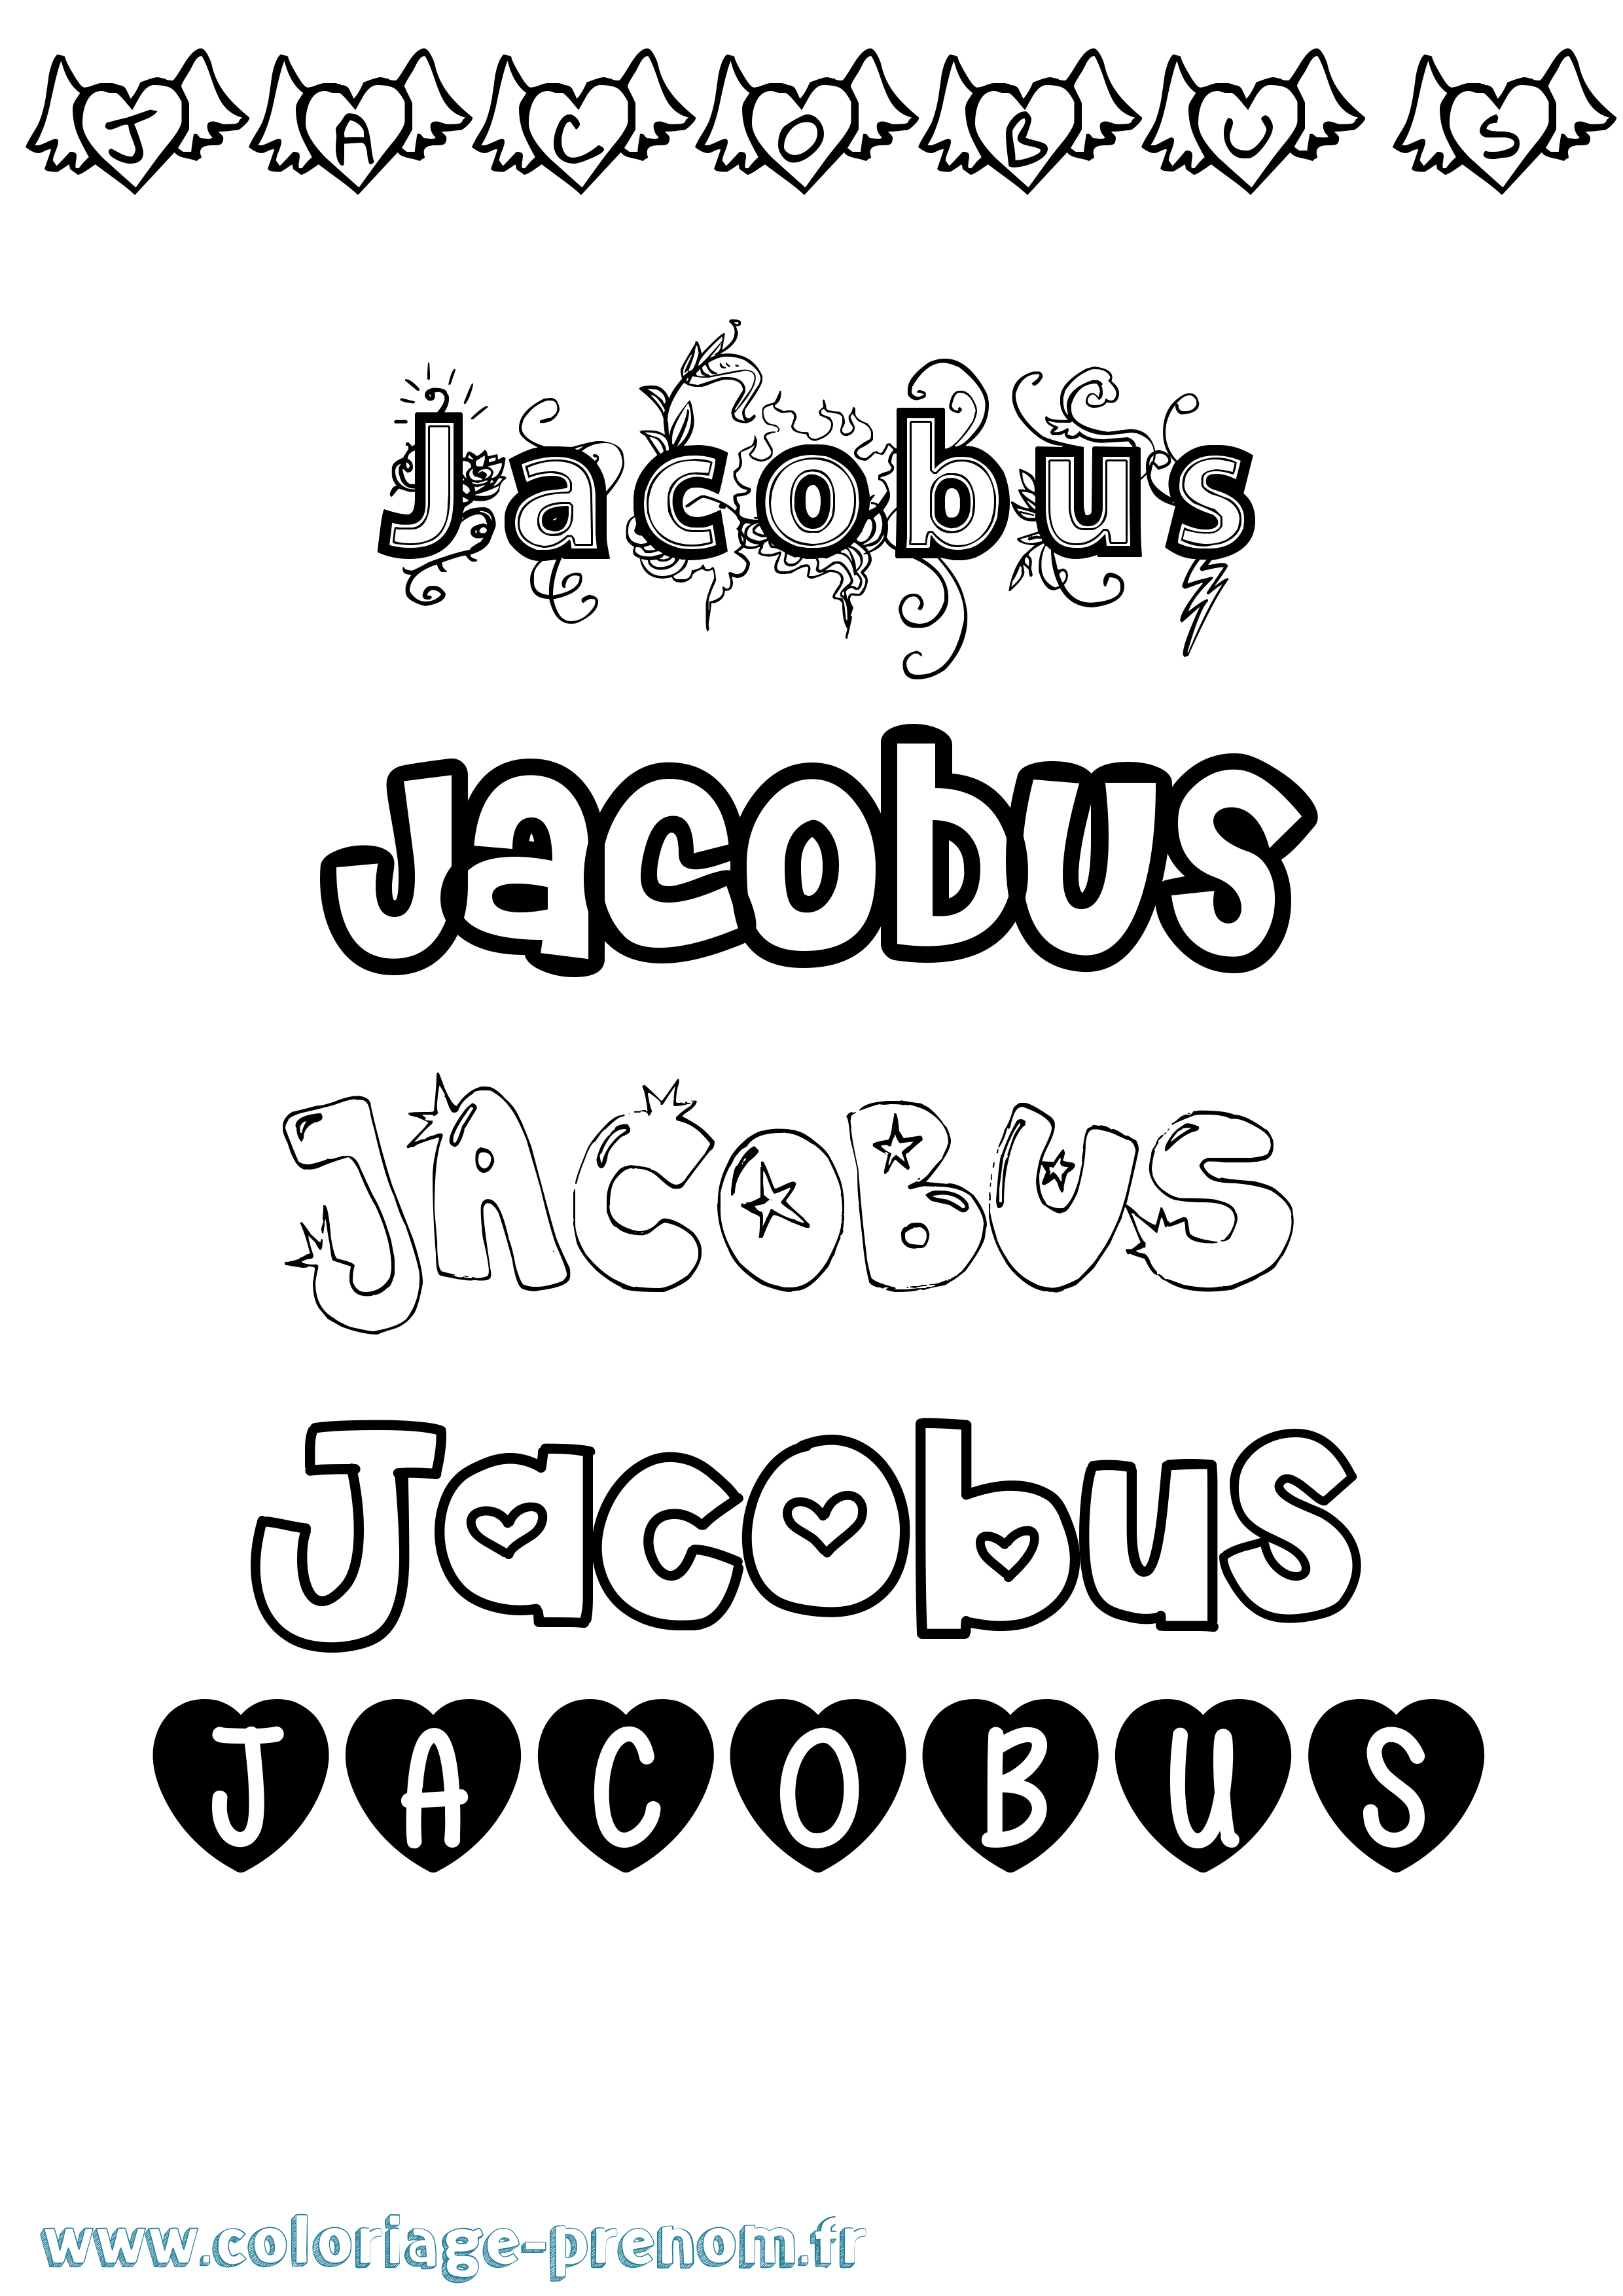 Coloriage prénom Jacobus Girly